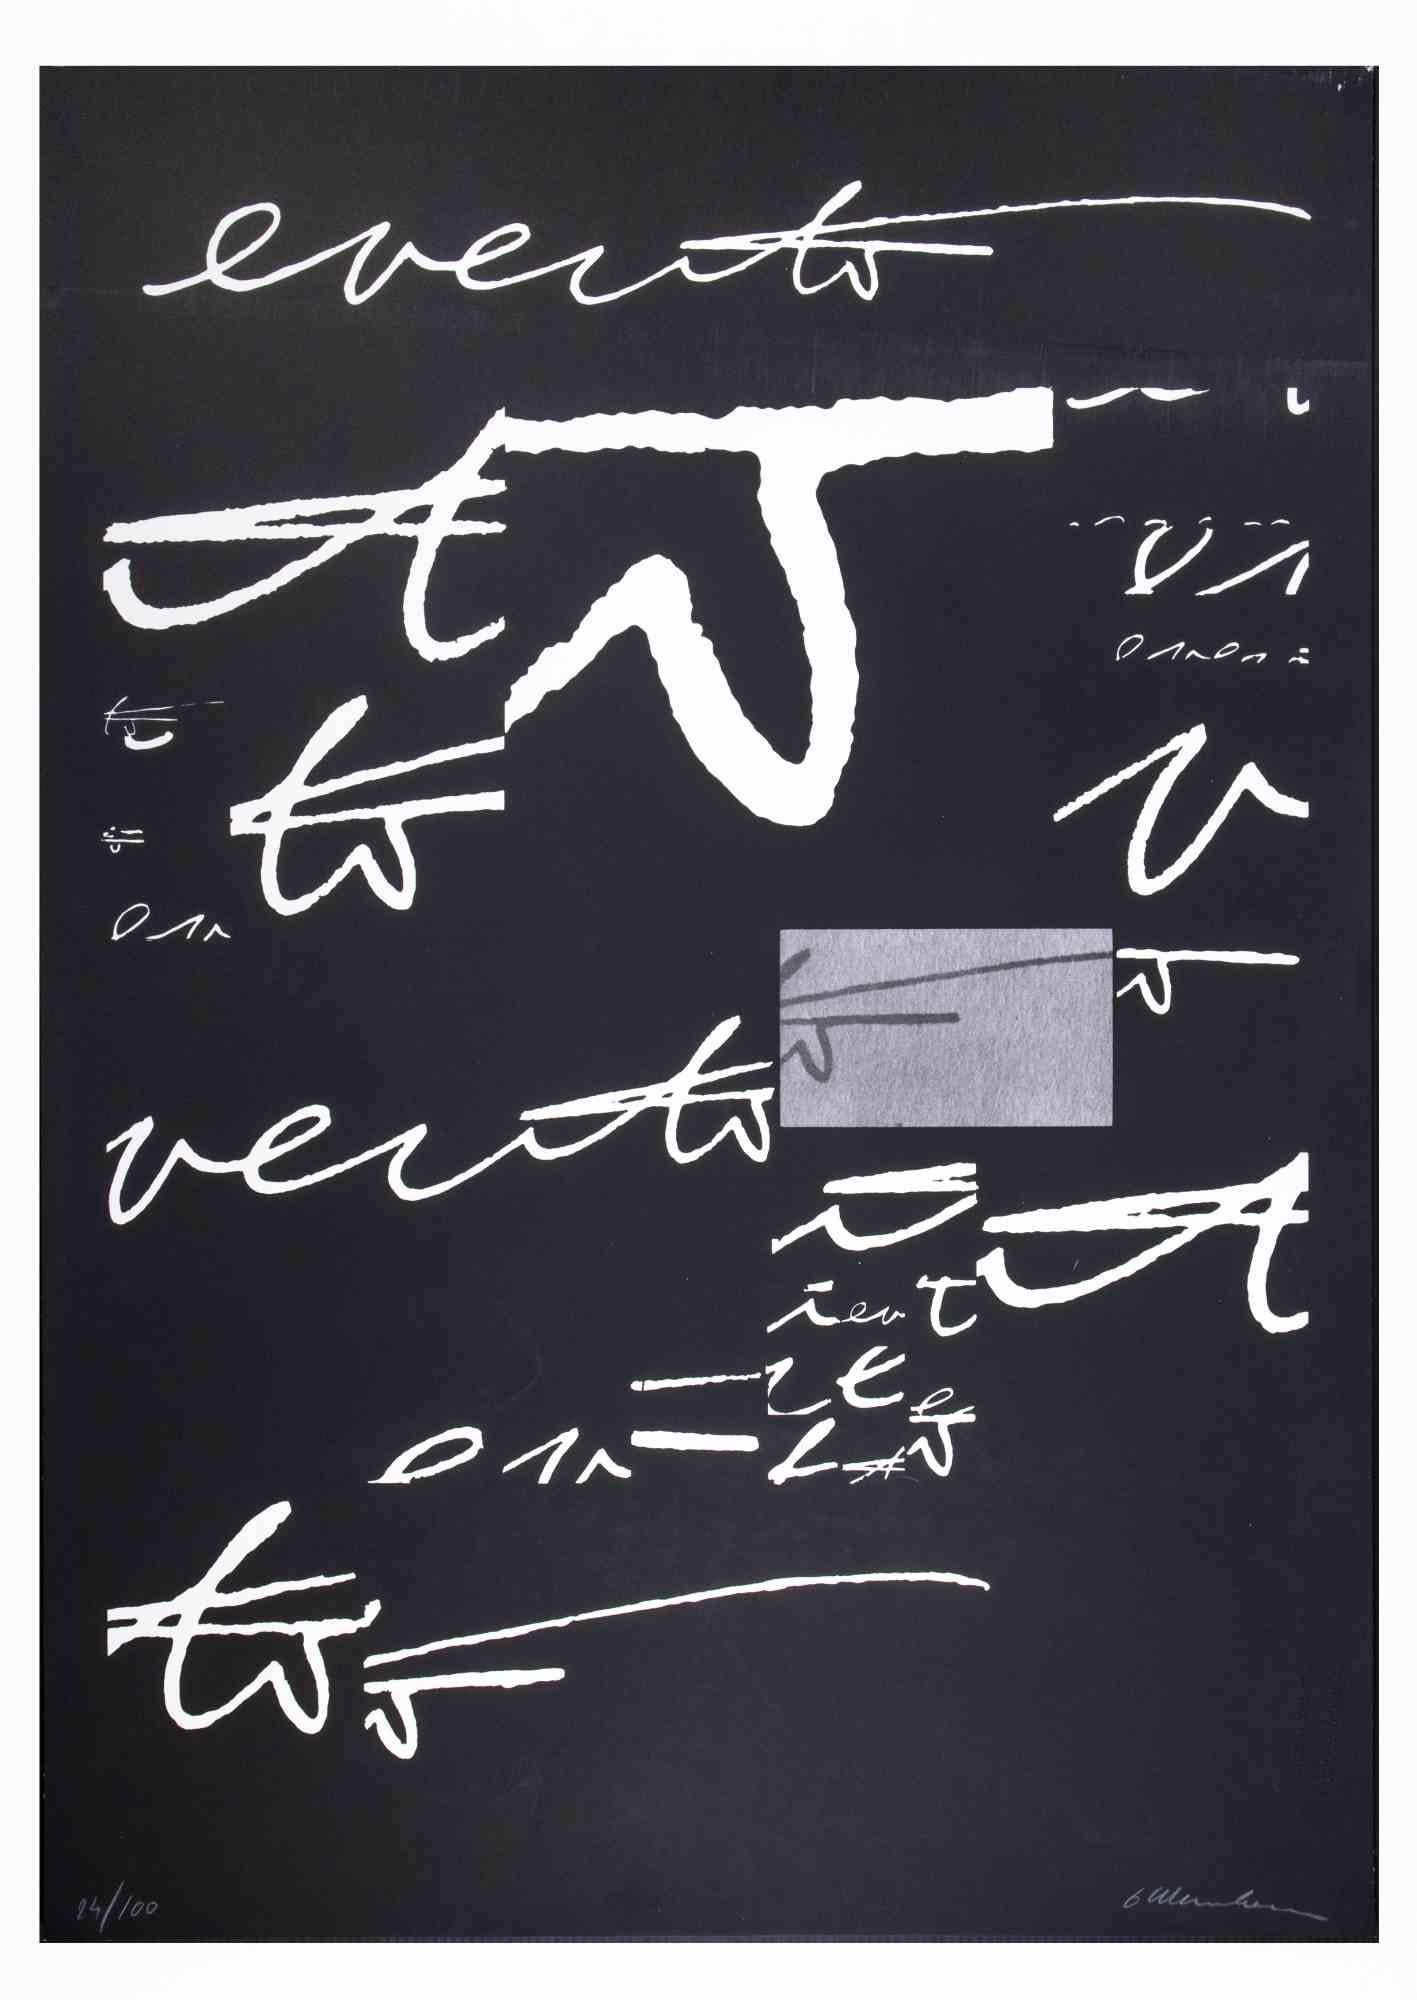 Abstract Composition ist ein Original-Siebdruck von Plinio Mesciulam aus dem Jahr 1973.

Sehr guter Zustand auf einem schwarzen Karton.

Vom Künstler am unteren Rand handsigniert und nummeriert.

Limitierte Auflage n.14 von 100 Exemplaren,